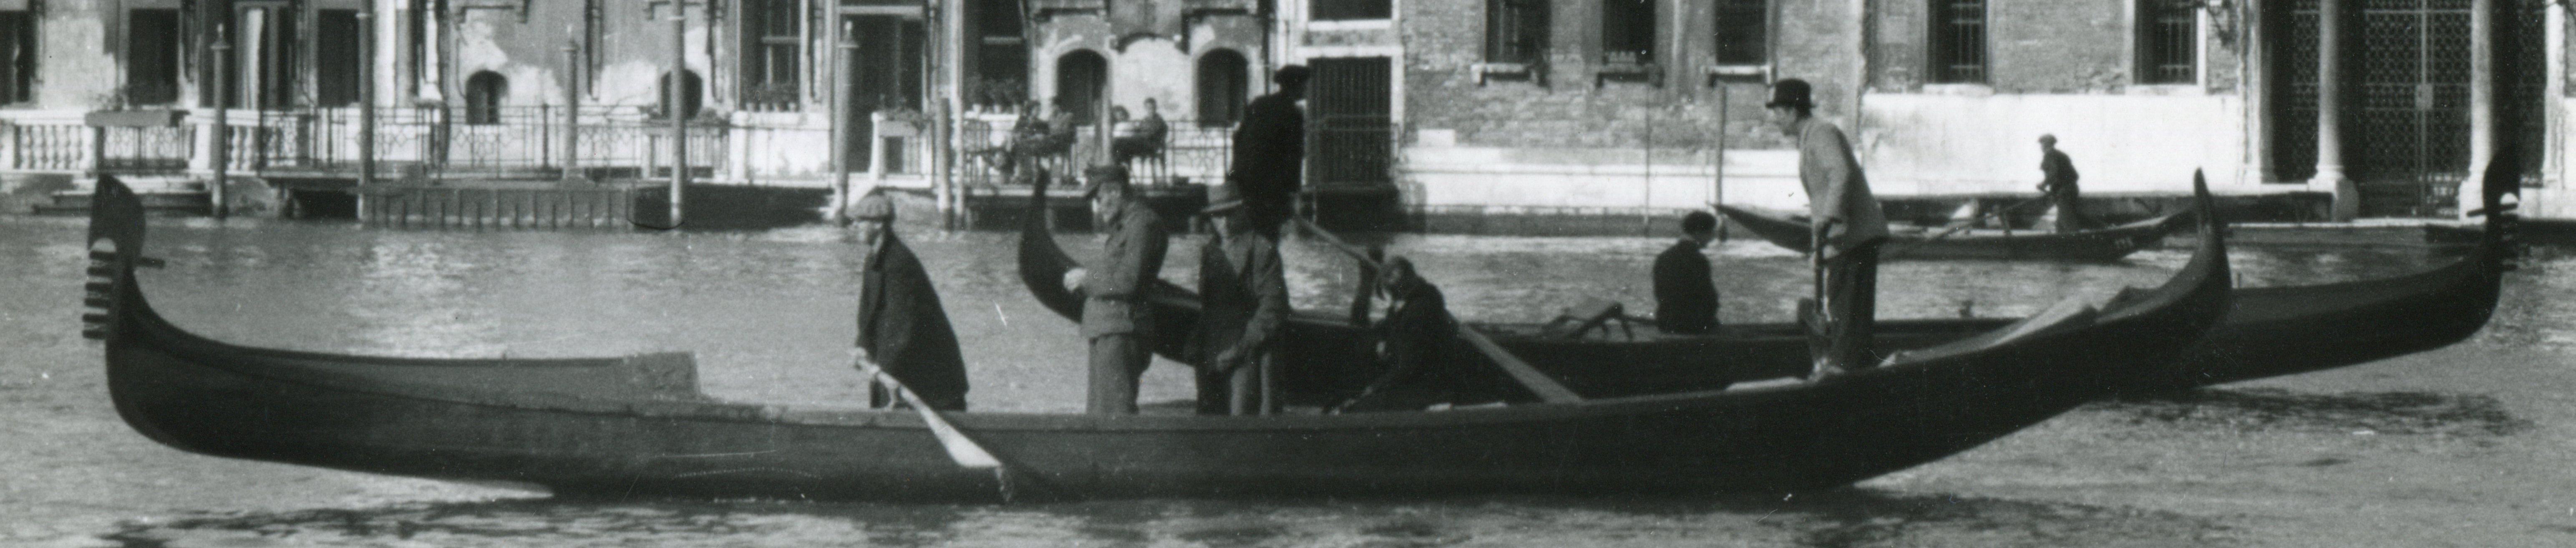 Venise - Gondole  1954 - Photograph de Erich Andres